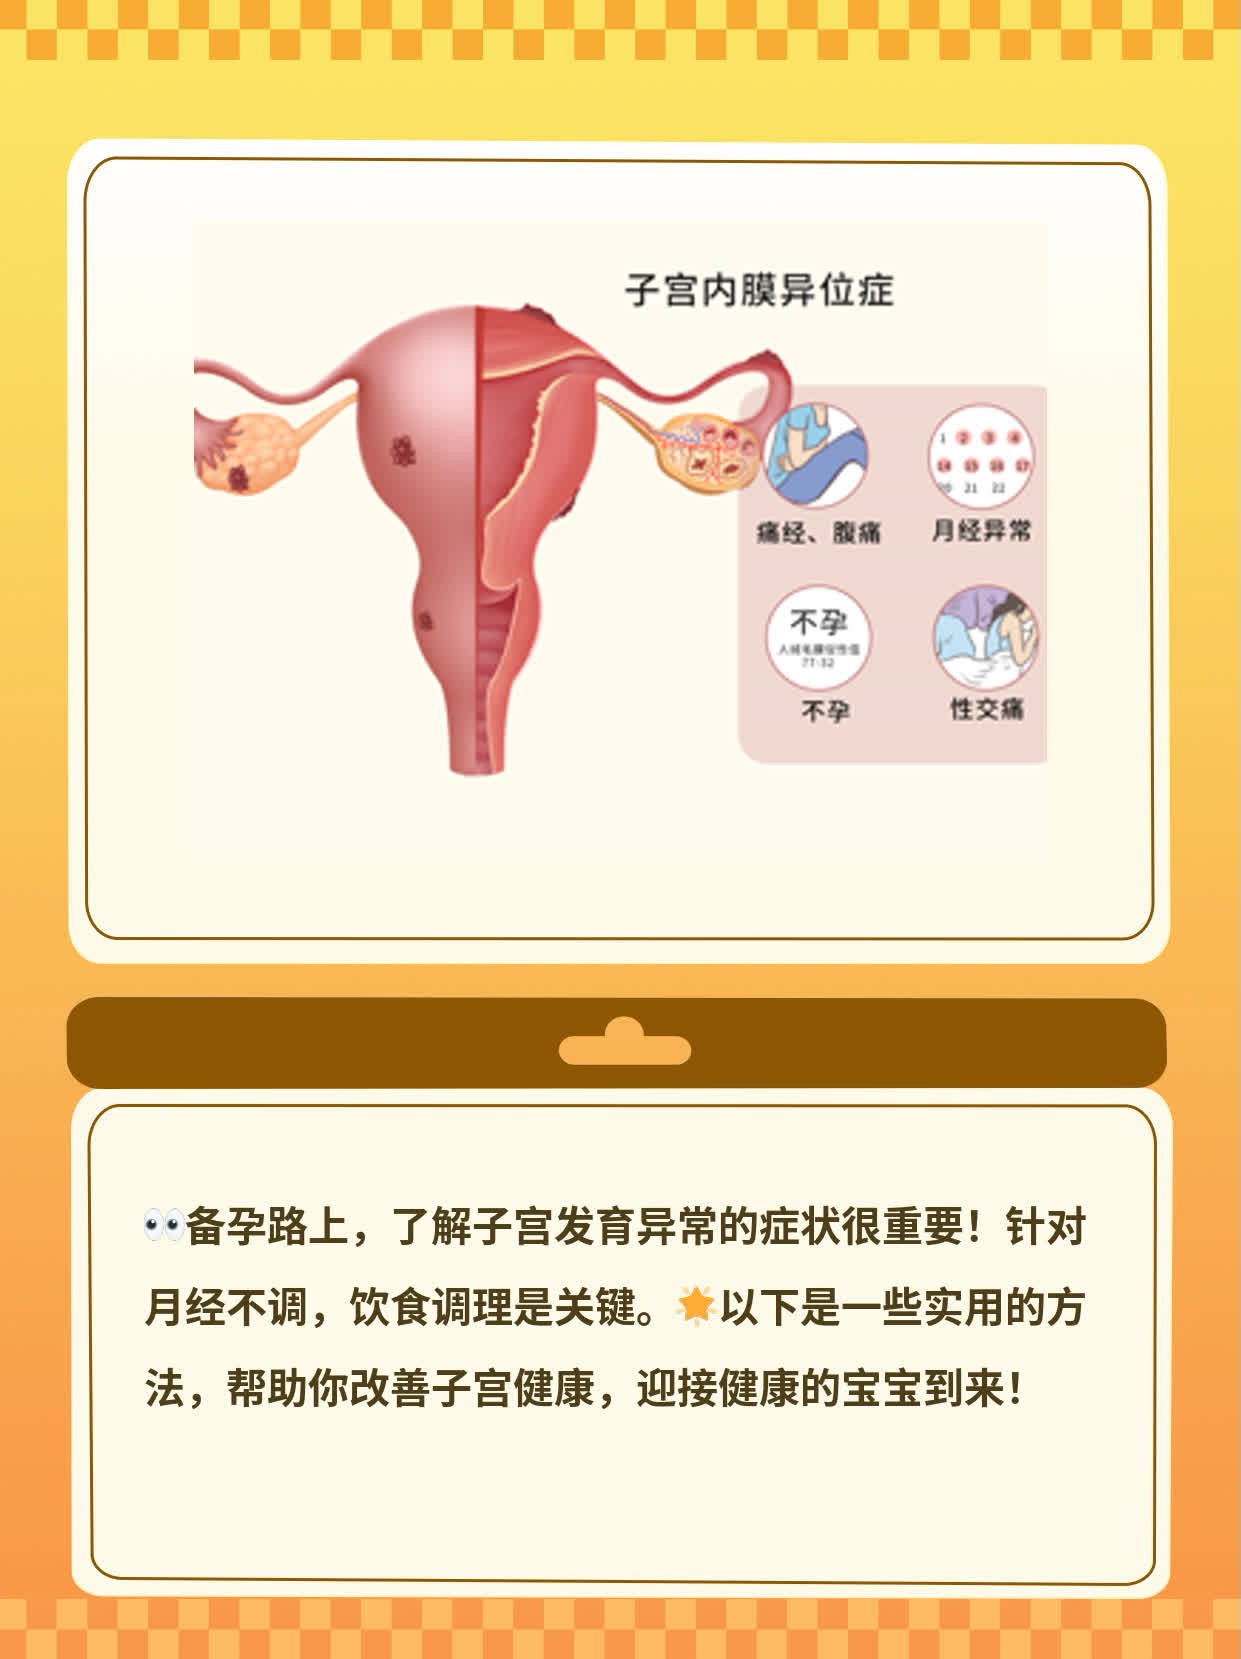 「备孕路上」子宫发育异常的症状大全